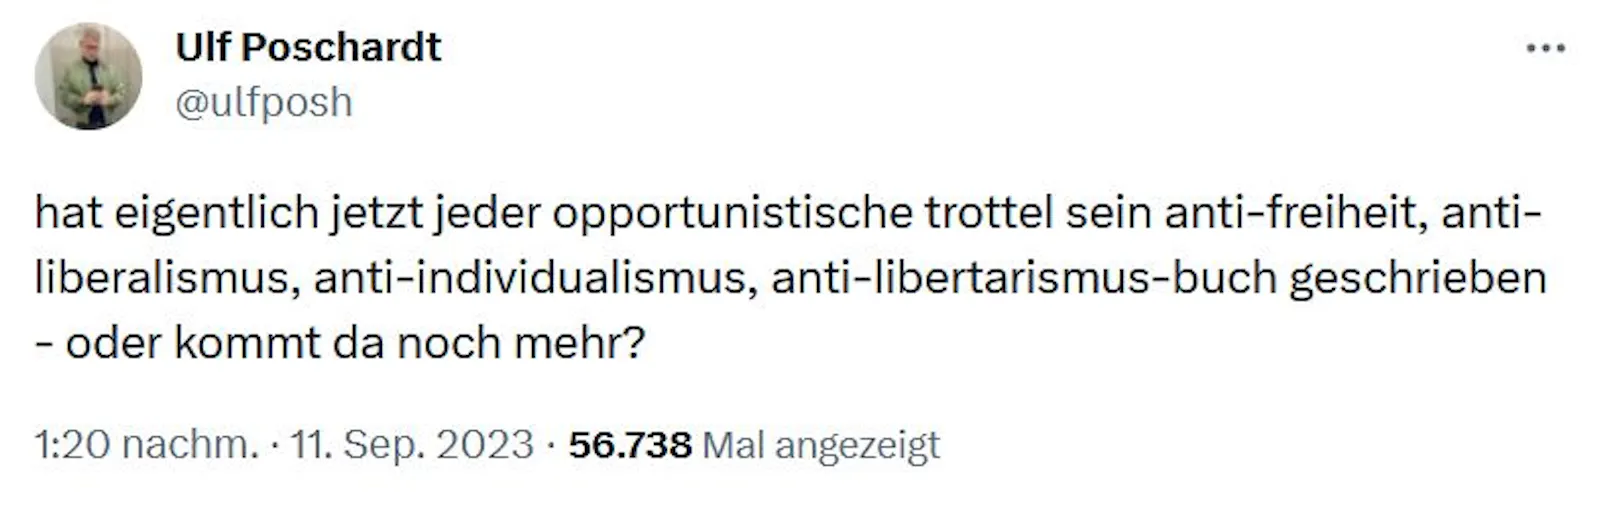 Ulf Porschardt wettert gegen "opportunistische Trottel", die "anti-freiheit"-bücher schreiben.